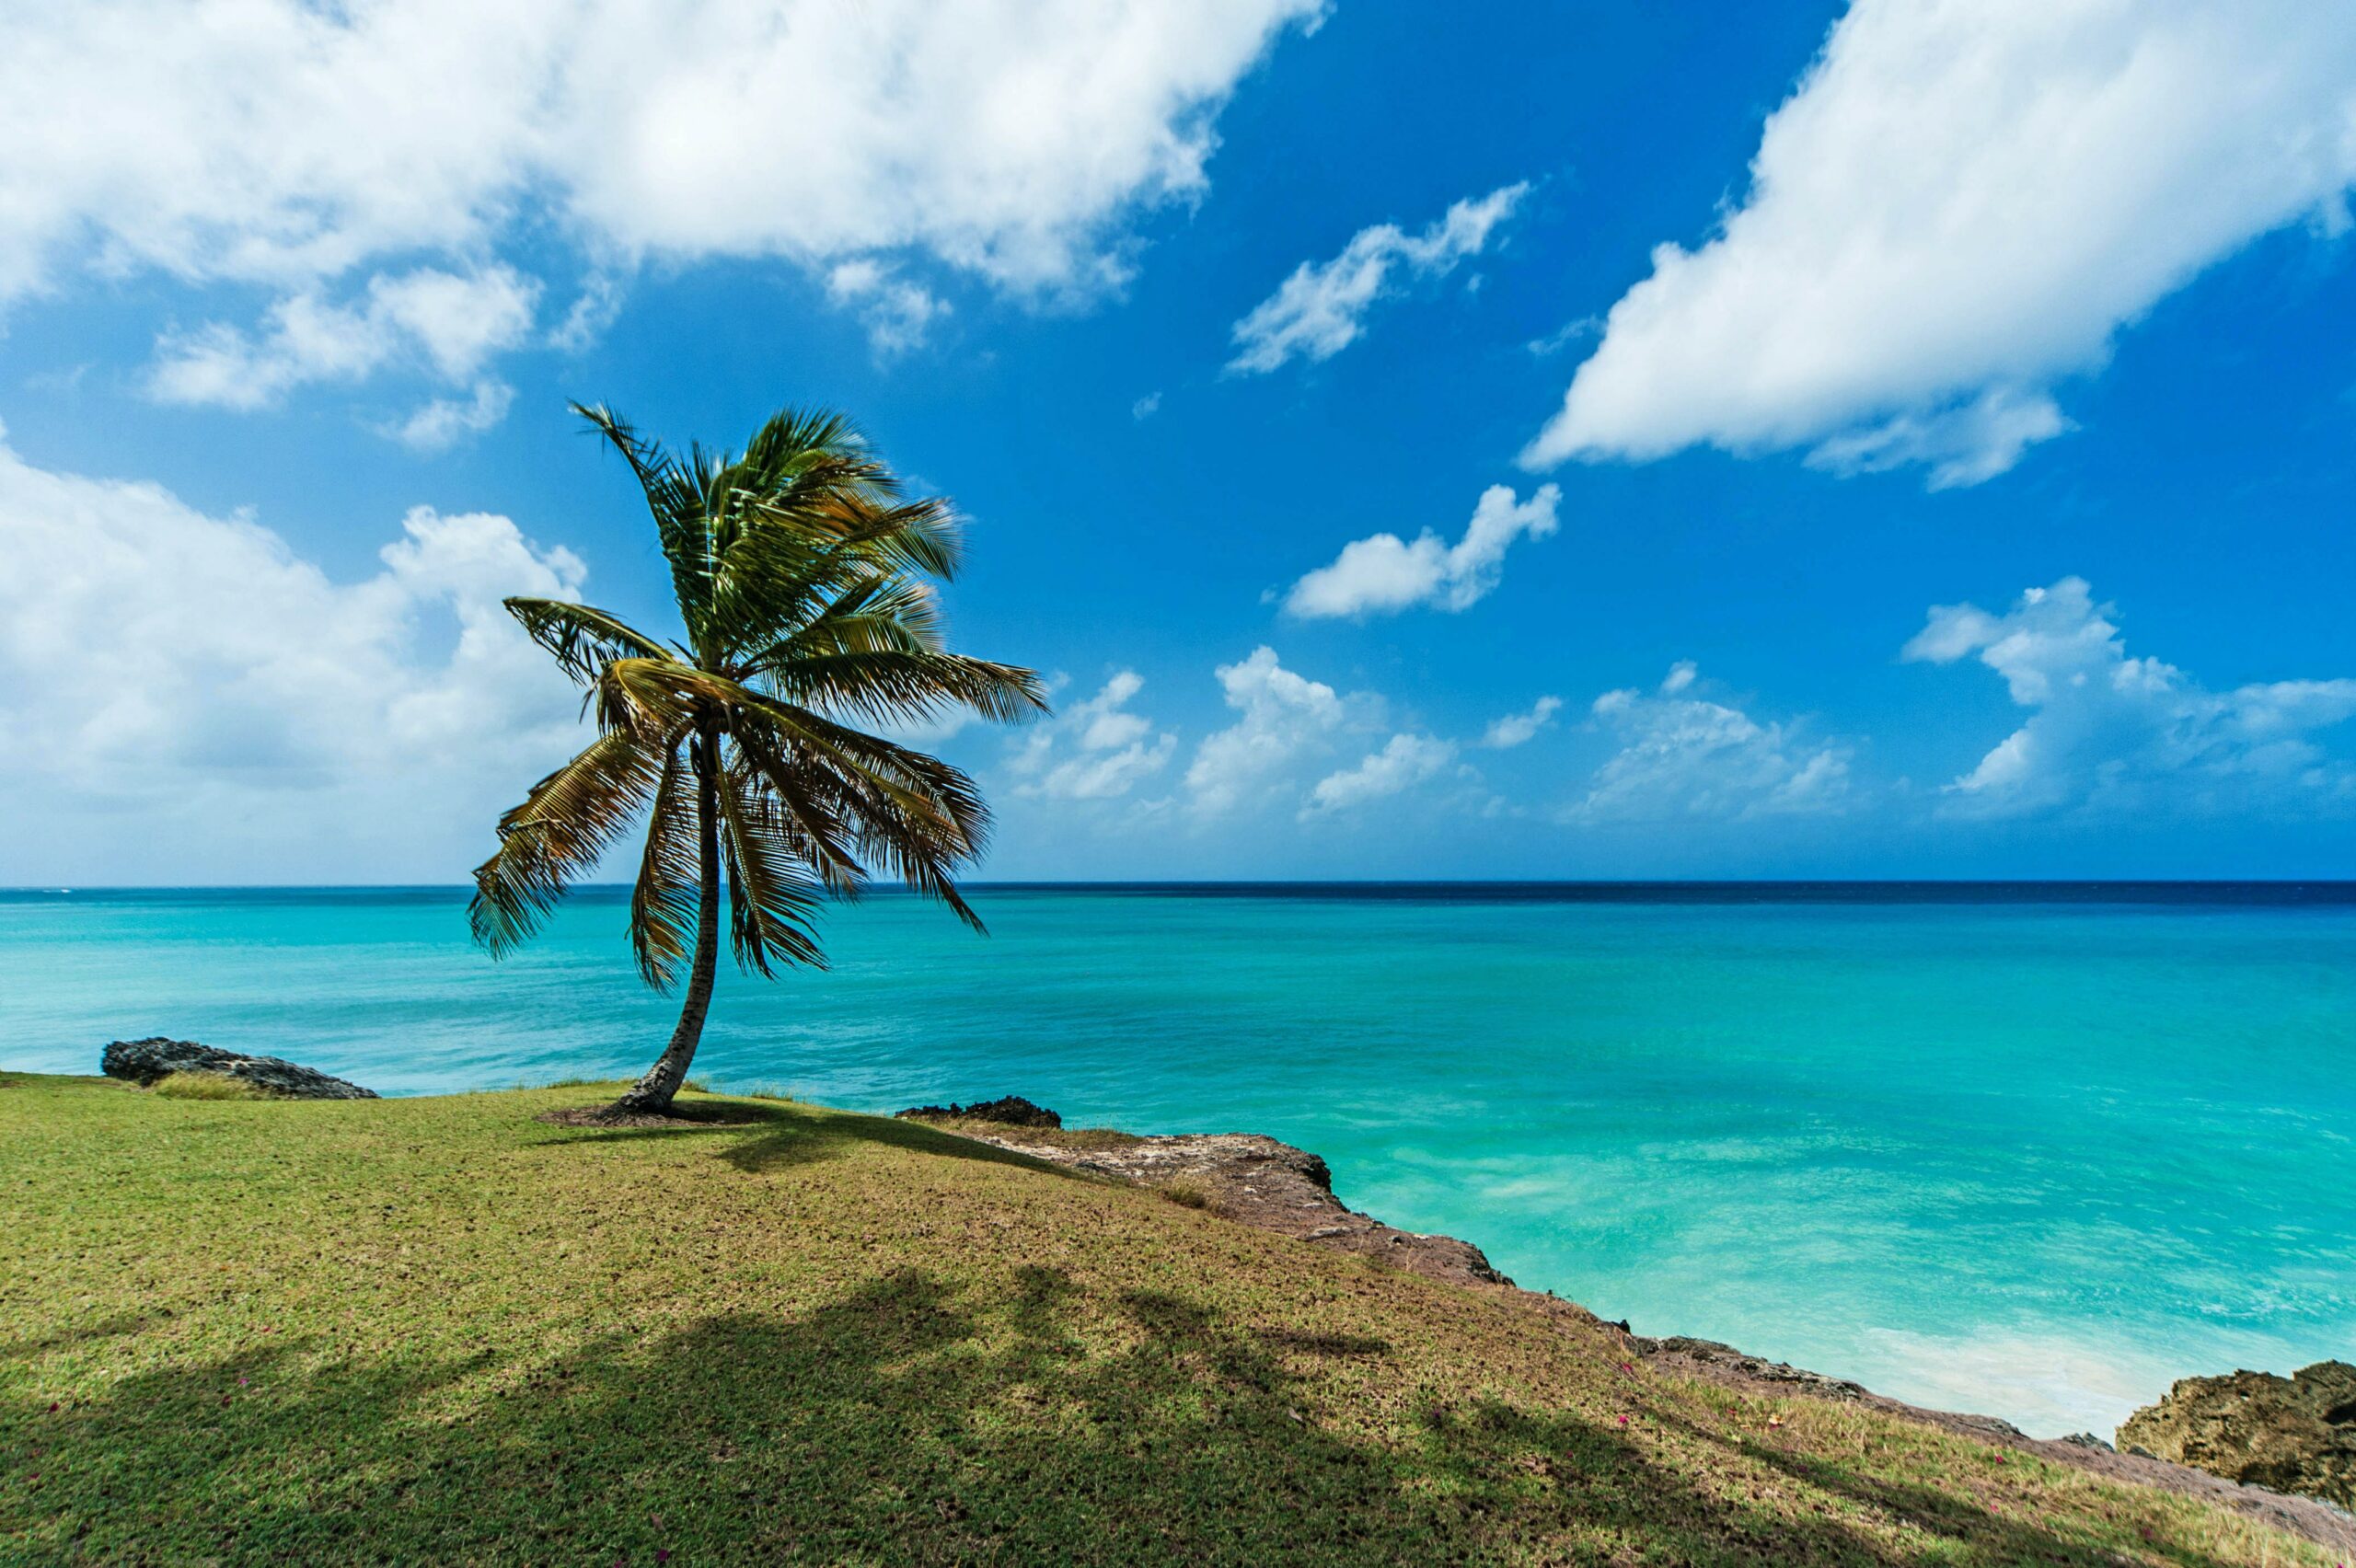 Vista do mar azul e límpido de Barbados - Representa seguro viagem para Barbados.